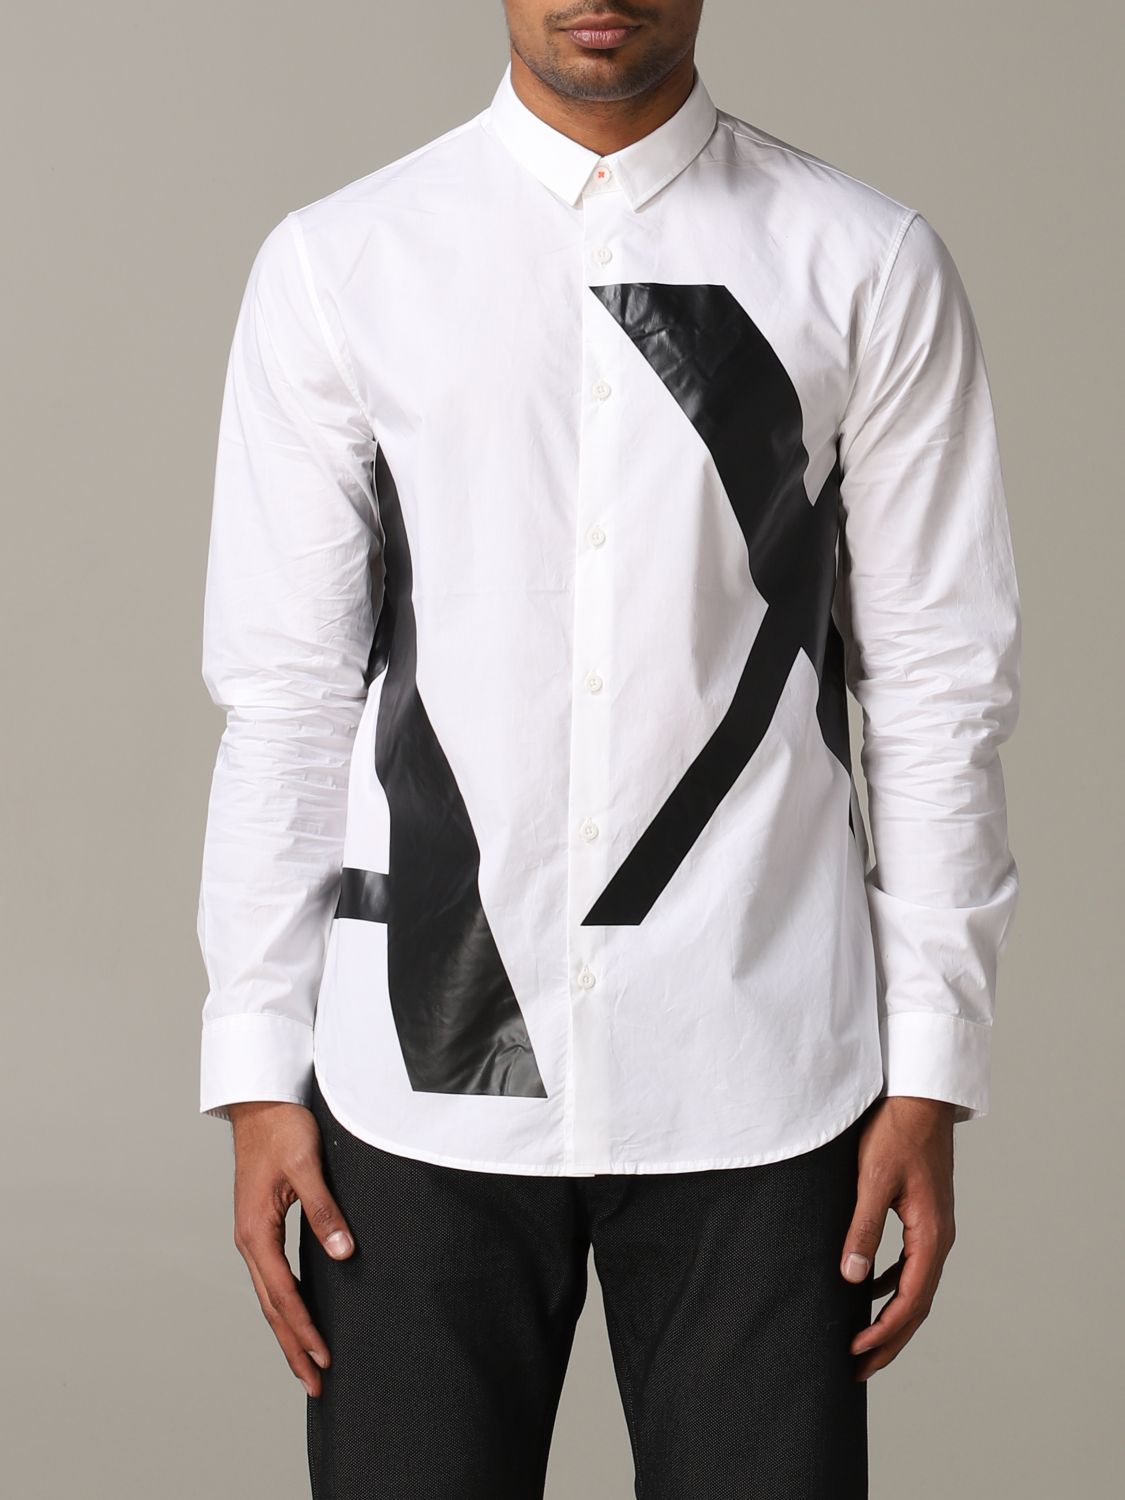 Armani Exchange shirt with big logo 